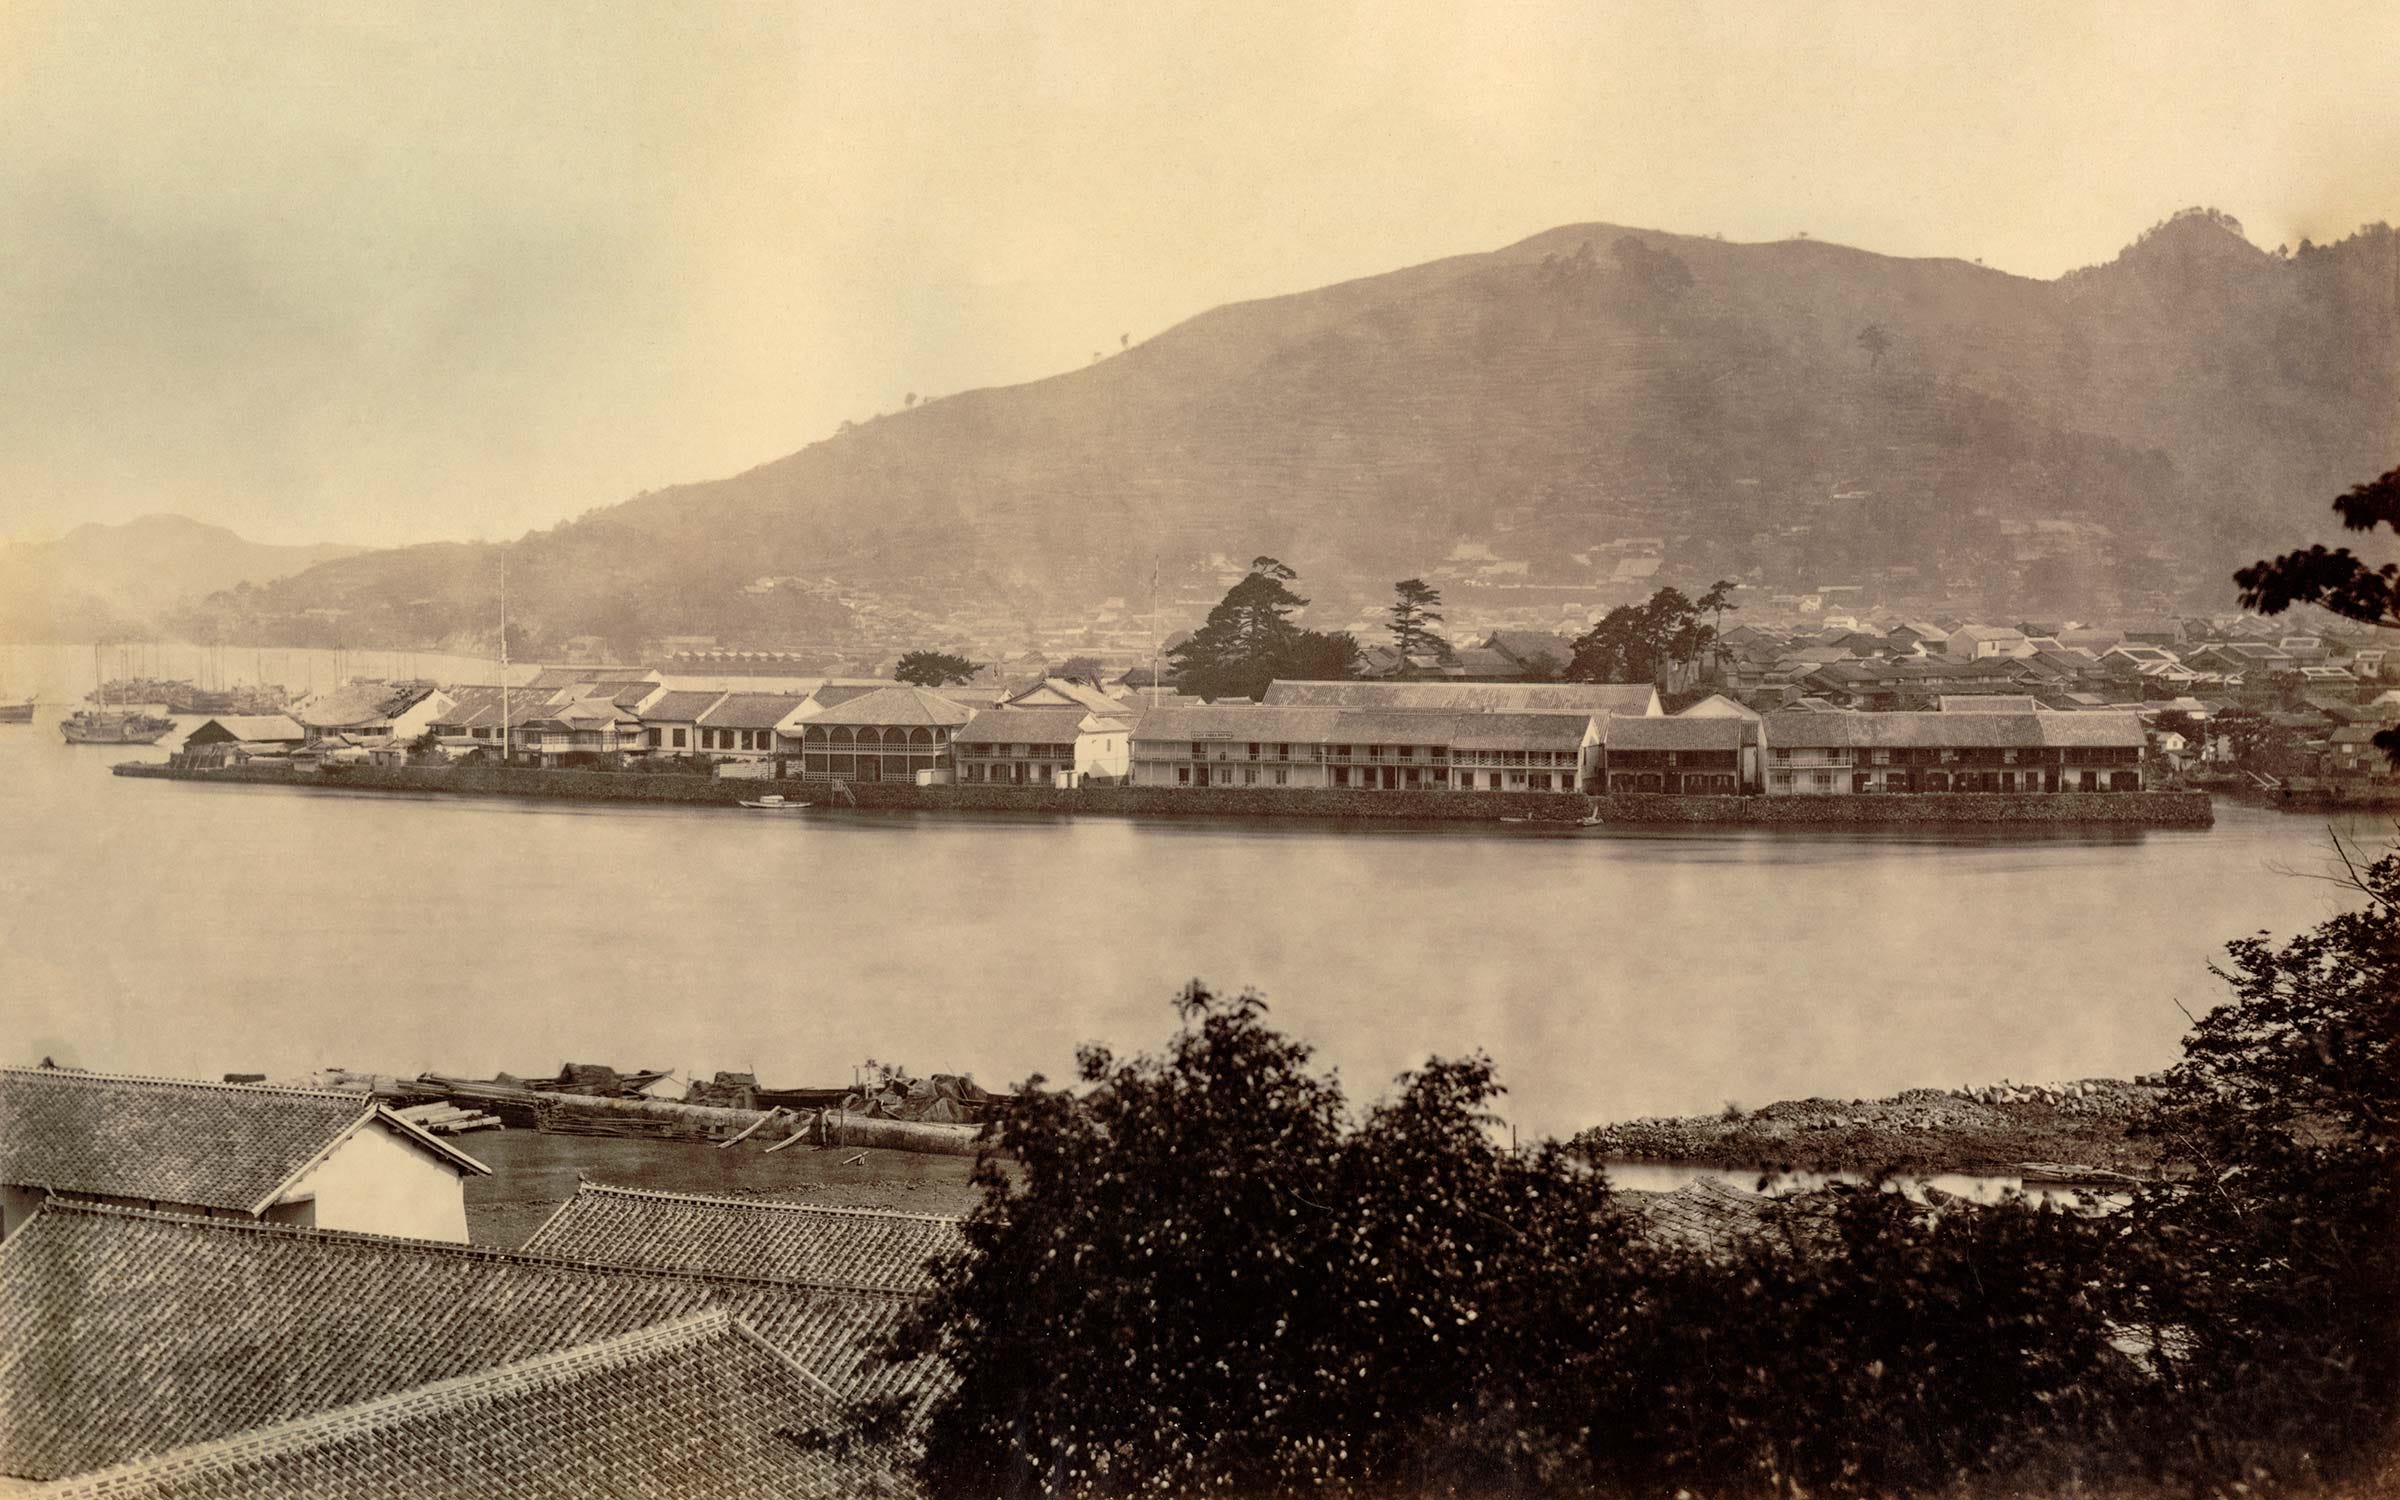 Dejima between 1863 and 1865